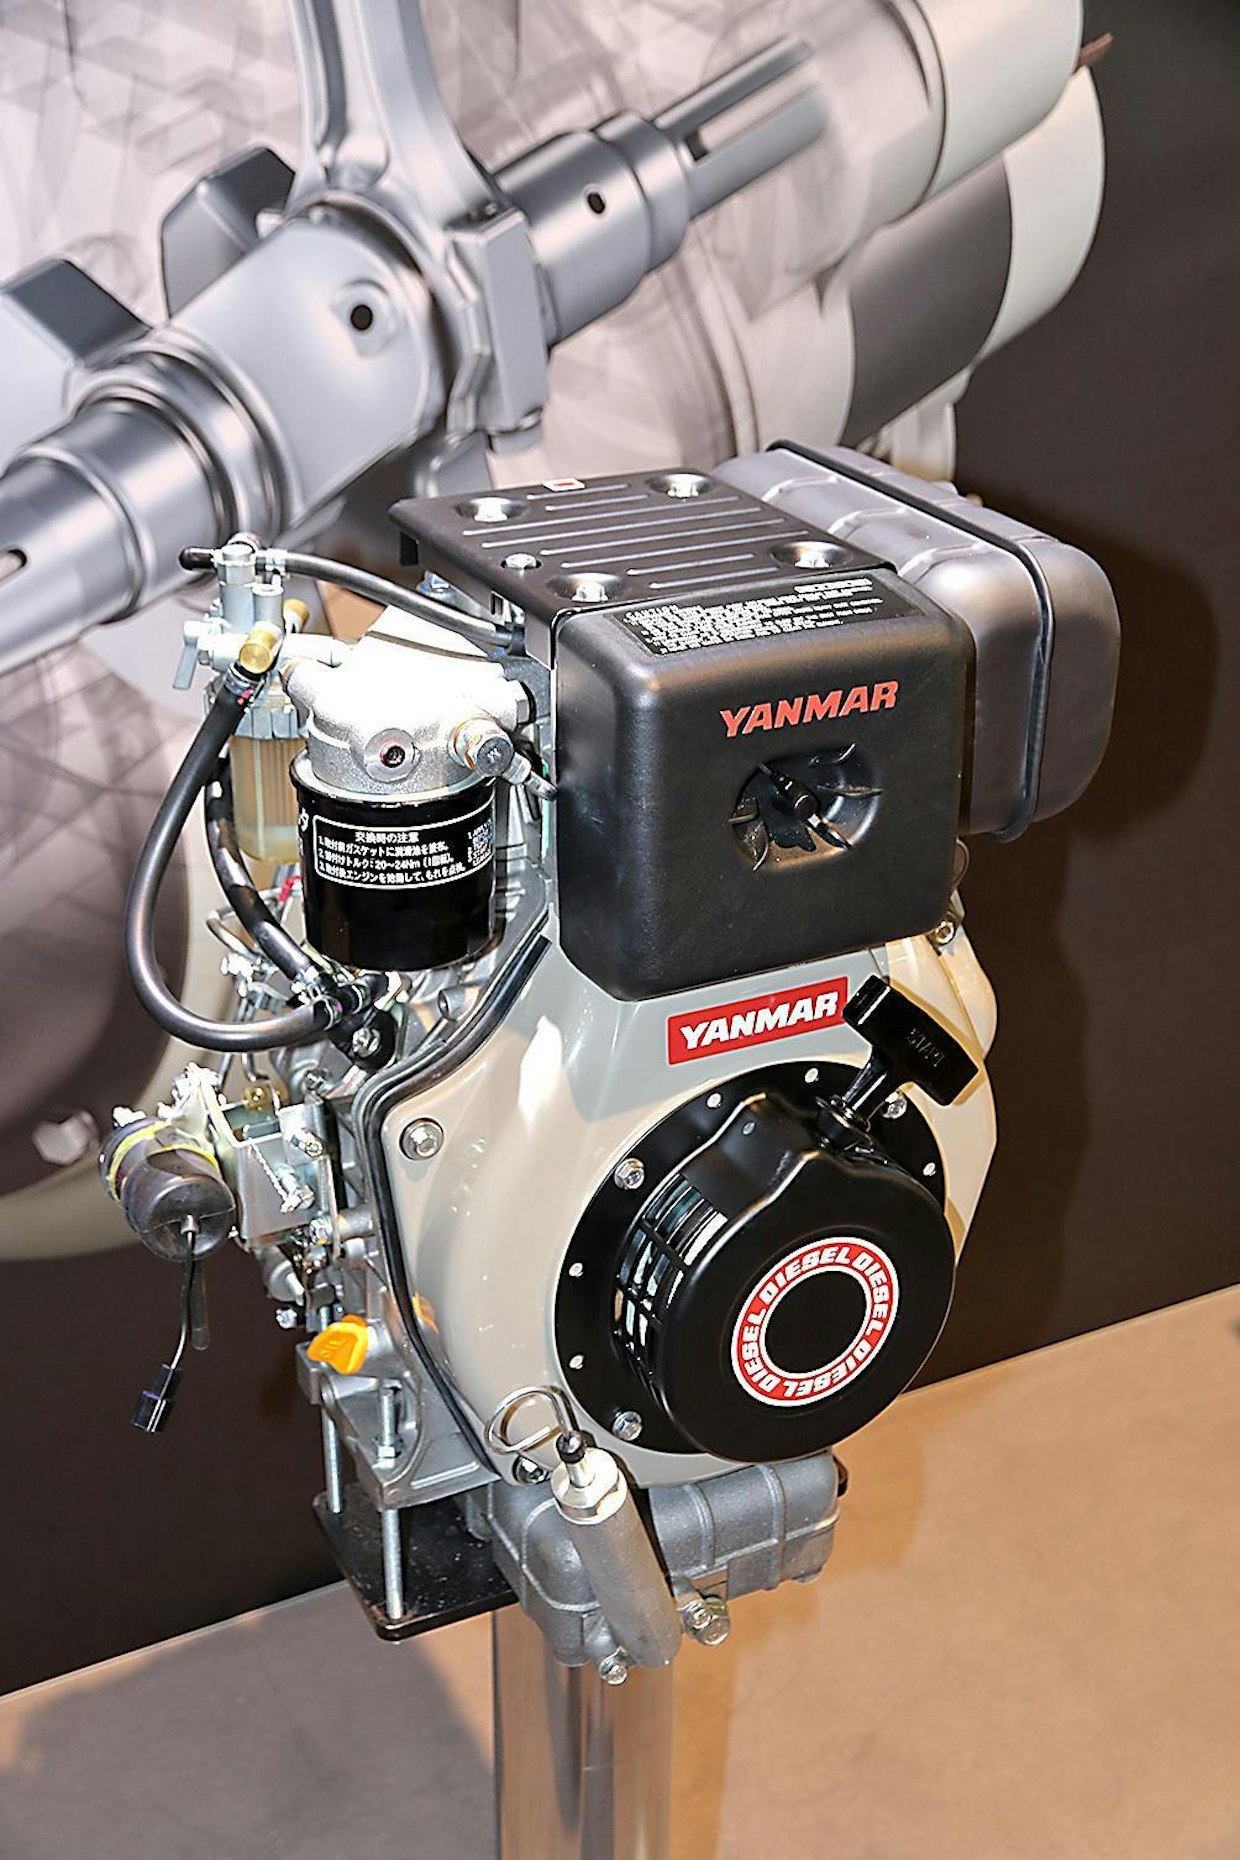 Yanmar L-V -sarjan ilmajäähdytteiset dieselmoottorit täyttävät Stage V:n päästömääräykset. Uuden L 48 -mallin teho on 3,4 kW. Se on varustettu Yanmarin uudella, suorasuihkutukseen perustuvalla polttoainejärjestelmällä sekä DOC-hapetuskatalysaattorilla. (UO)